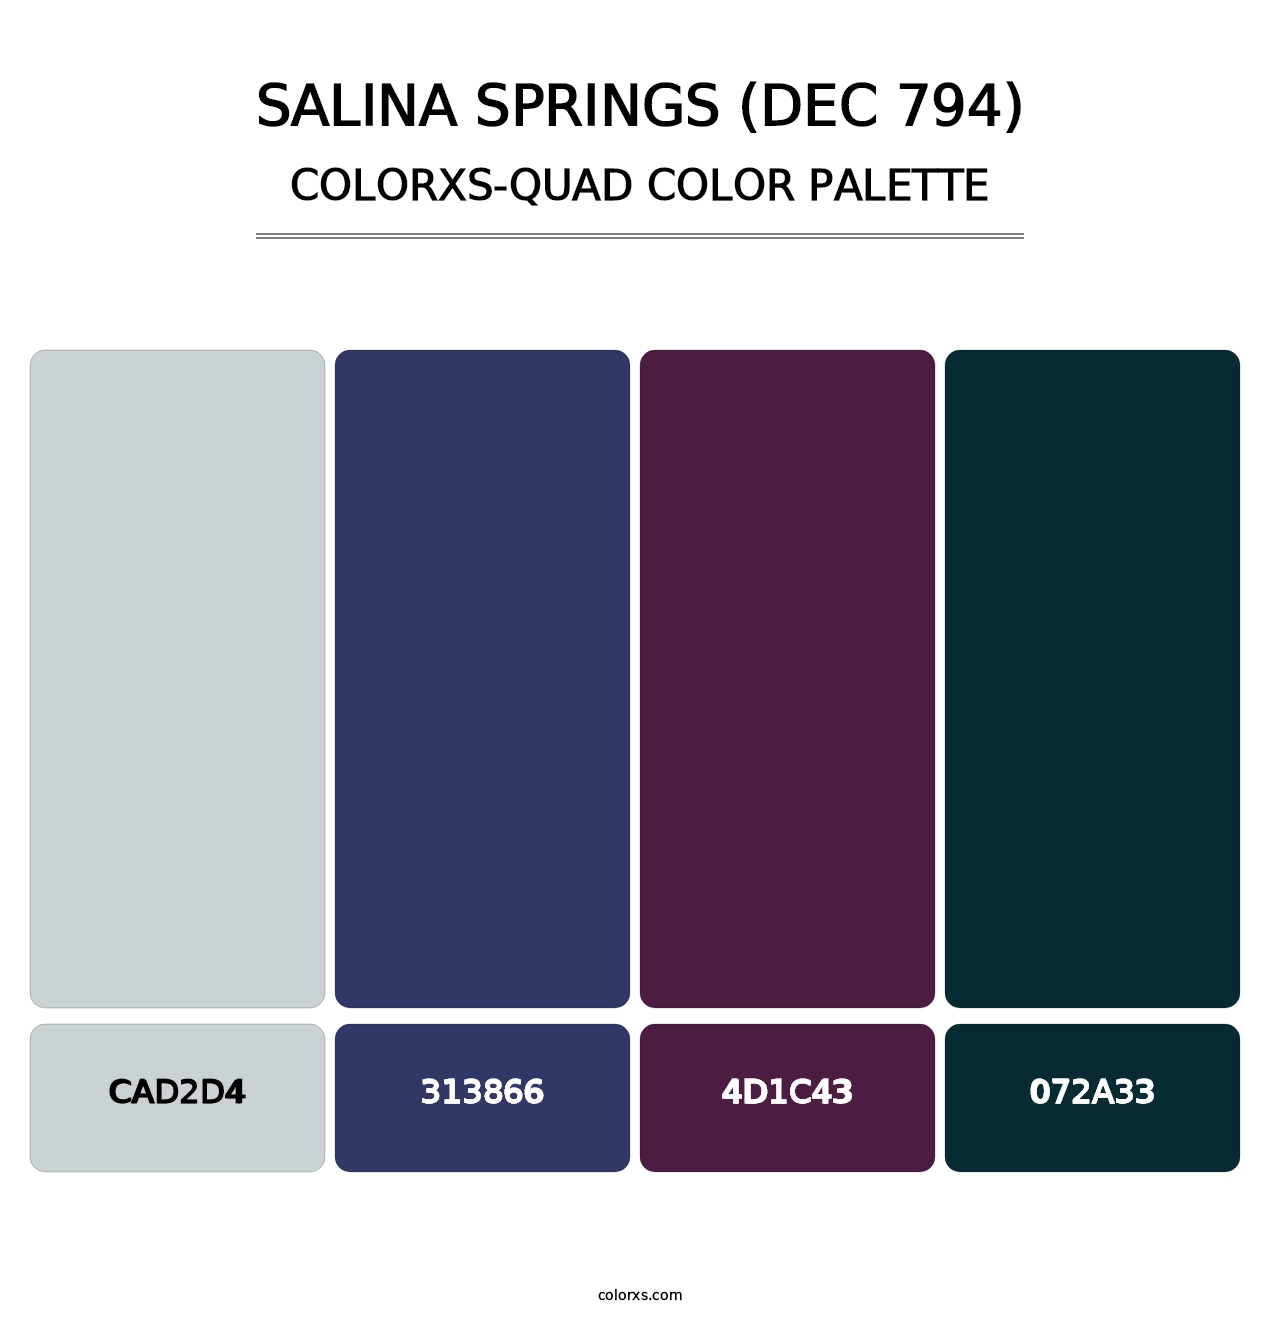 Salina Springs (DEC 794) - Colorxs Quad Palette